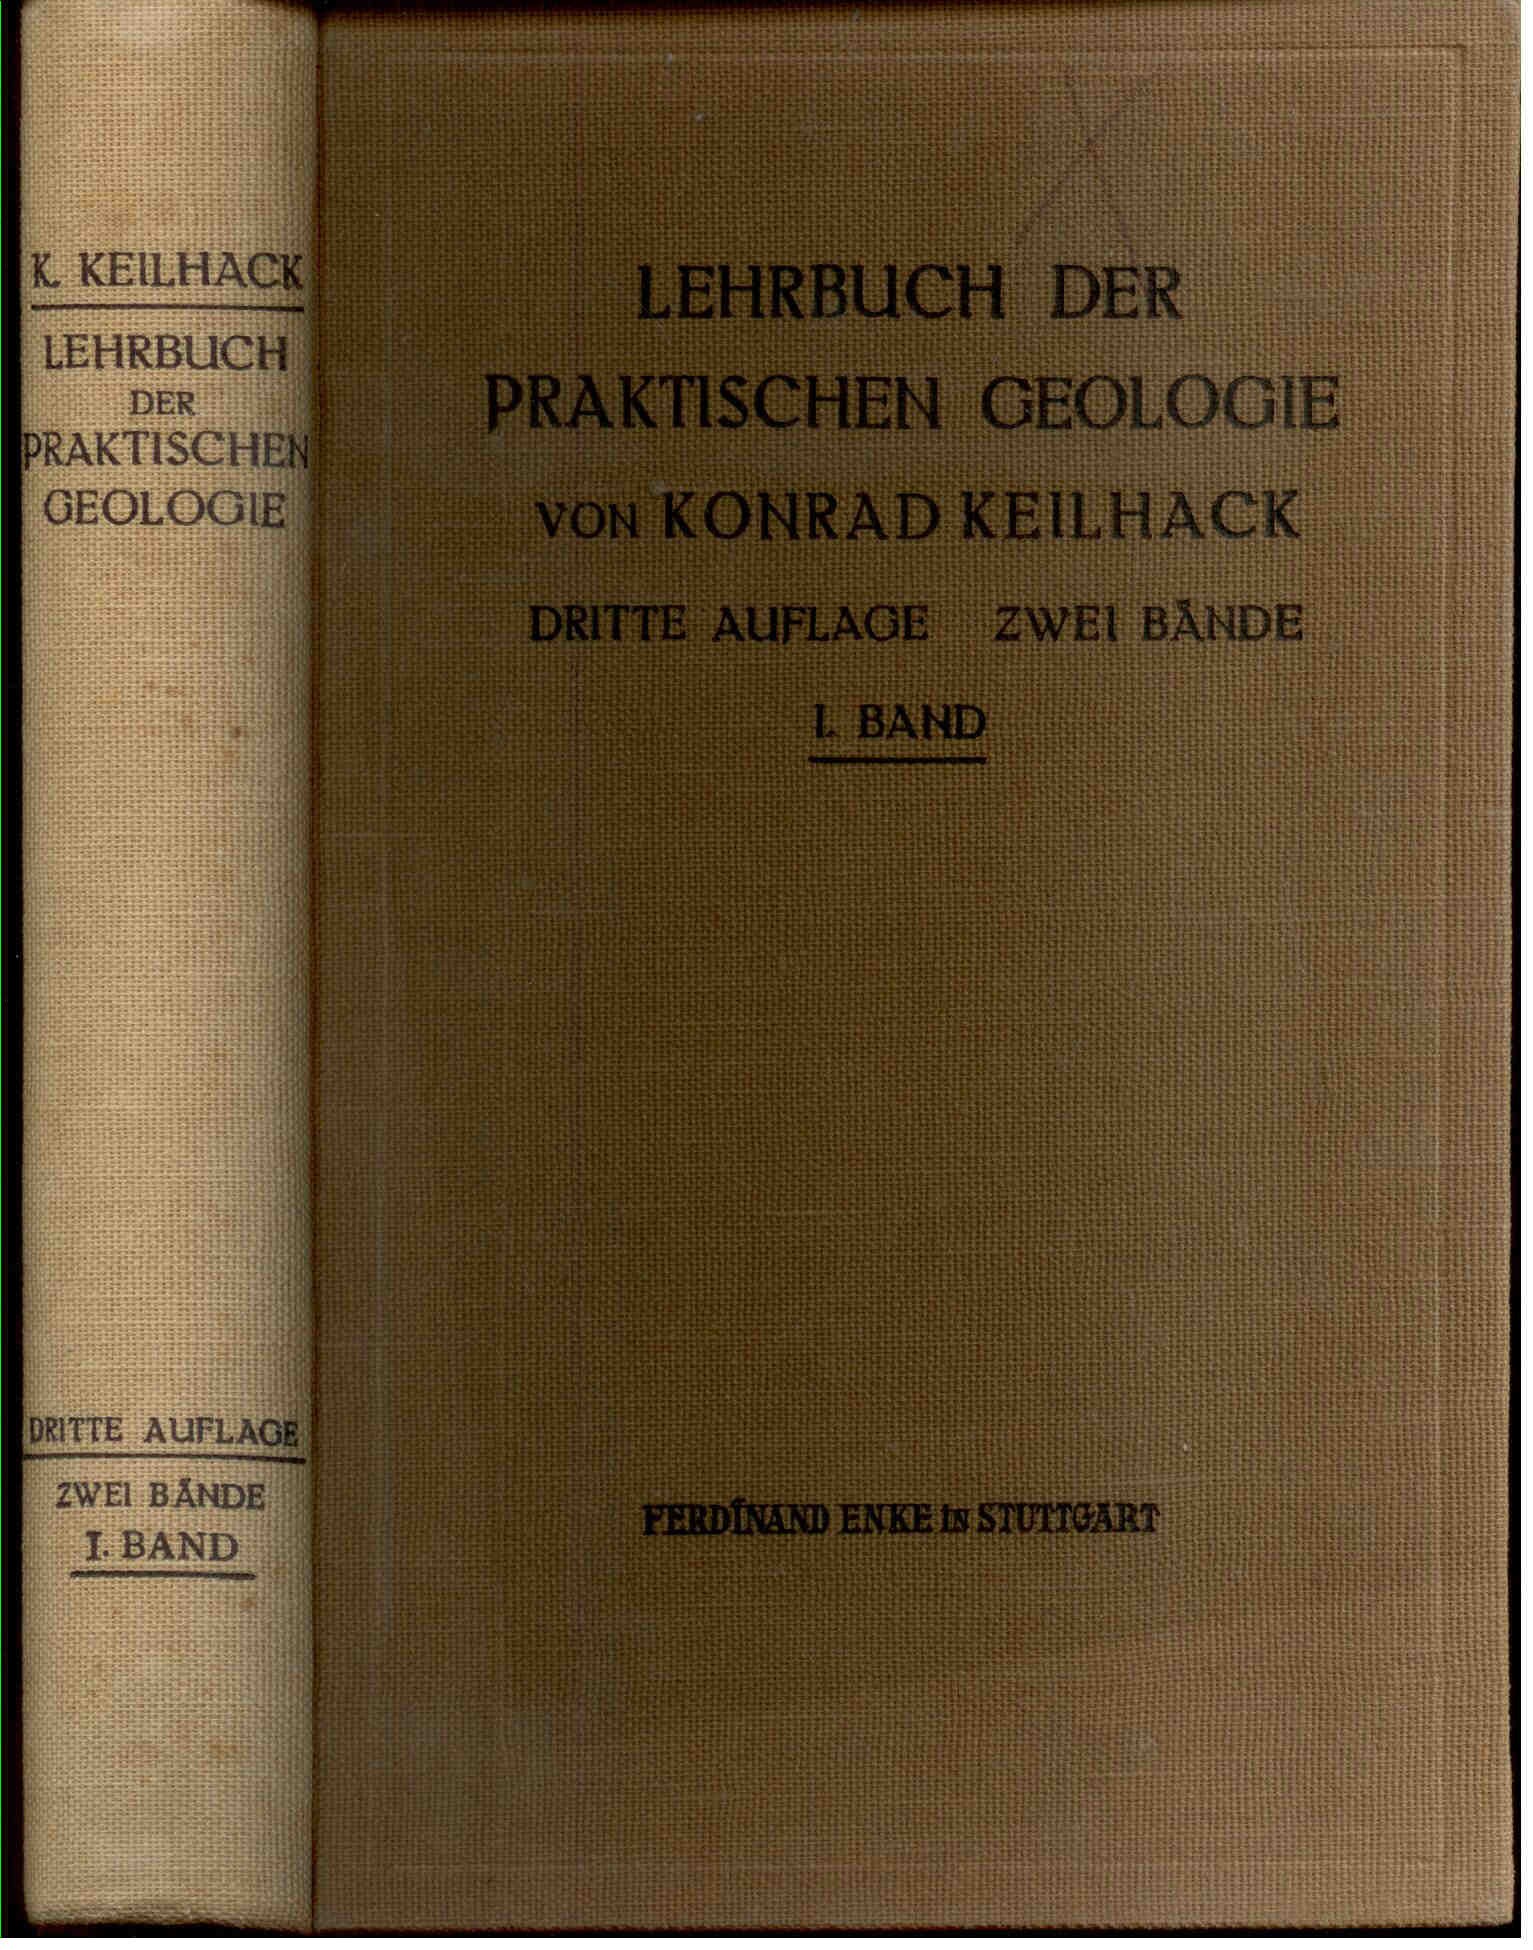 Keilhack, K.: Lehrbuch der Praktischen Geologie. I. und II. Band;